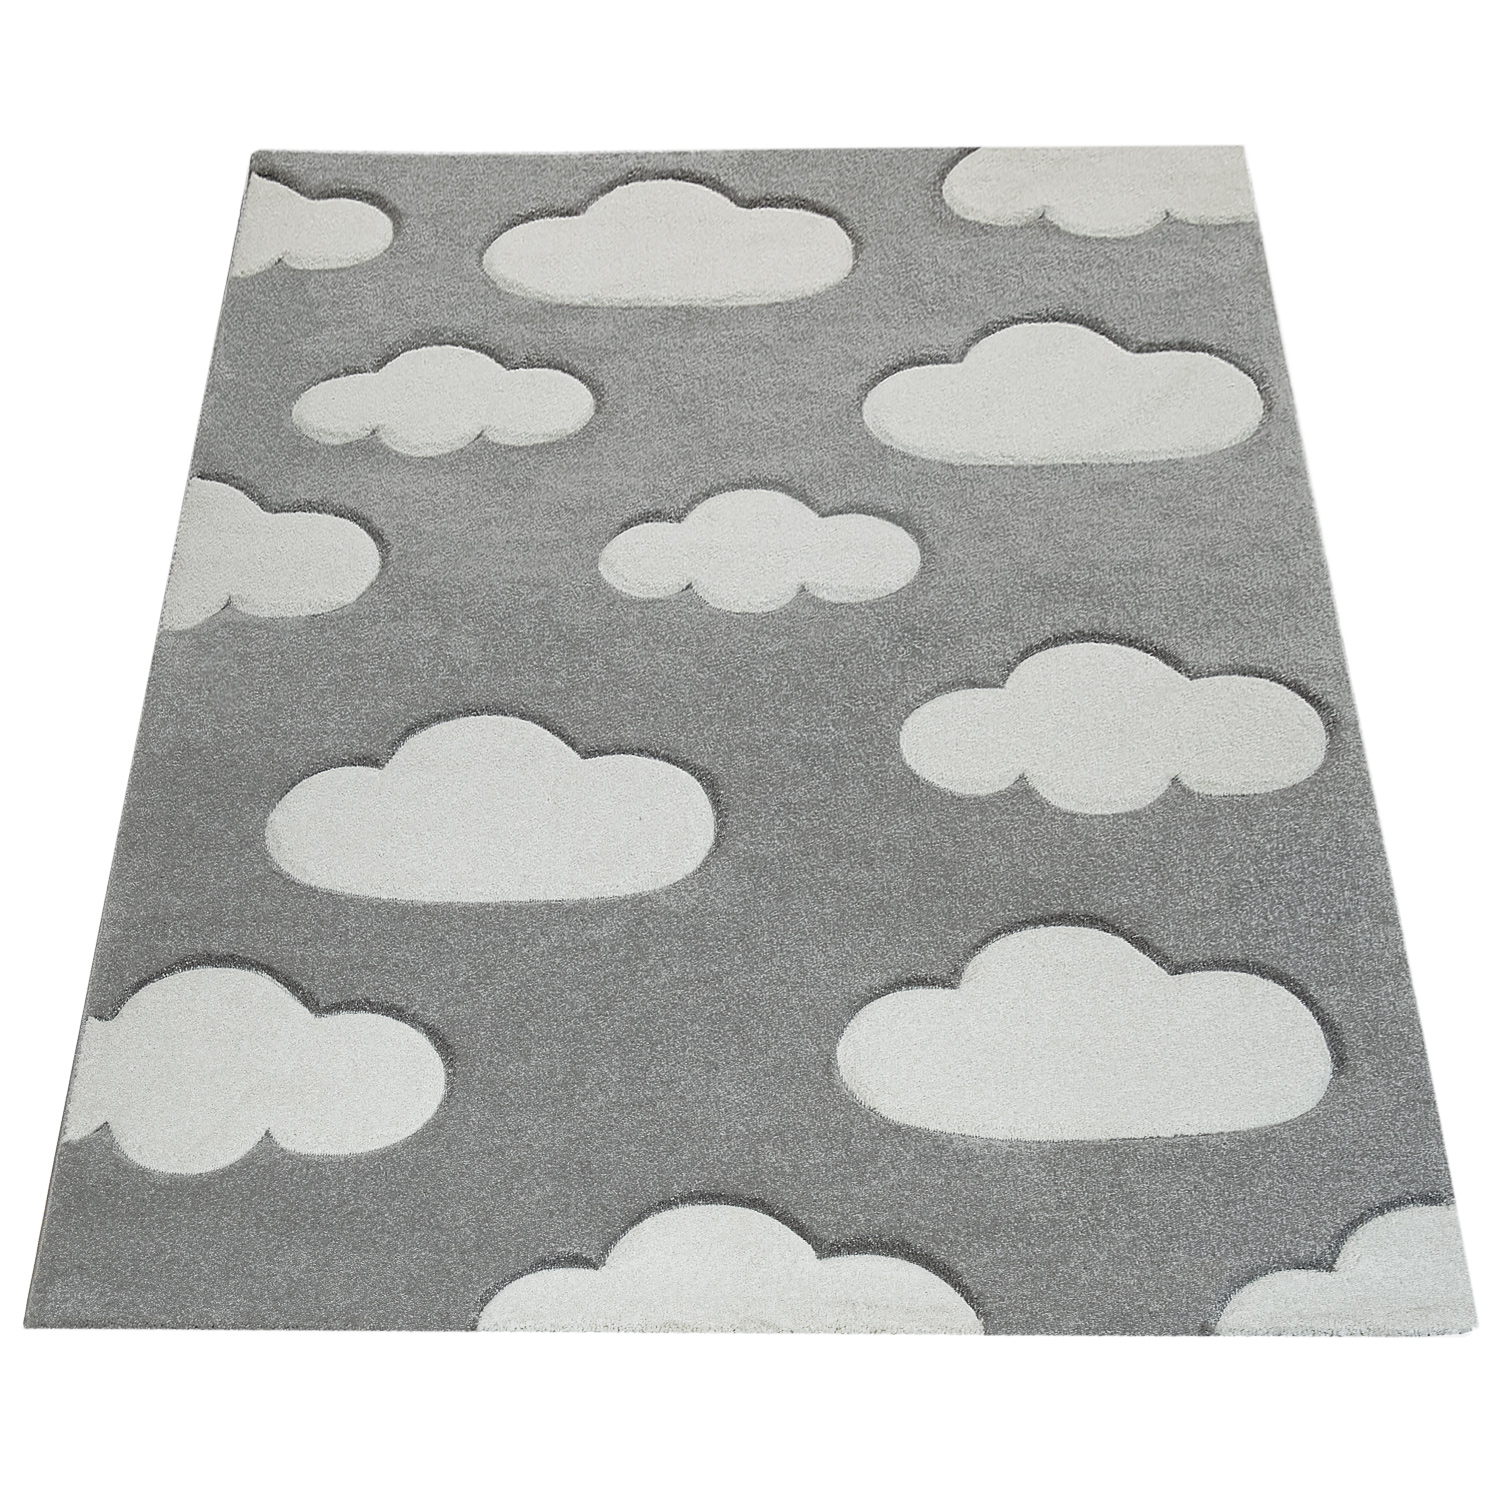 Teppich Kinderzimmer Pastellfarben Wolken Design Grau 